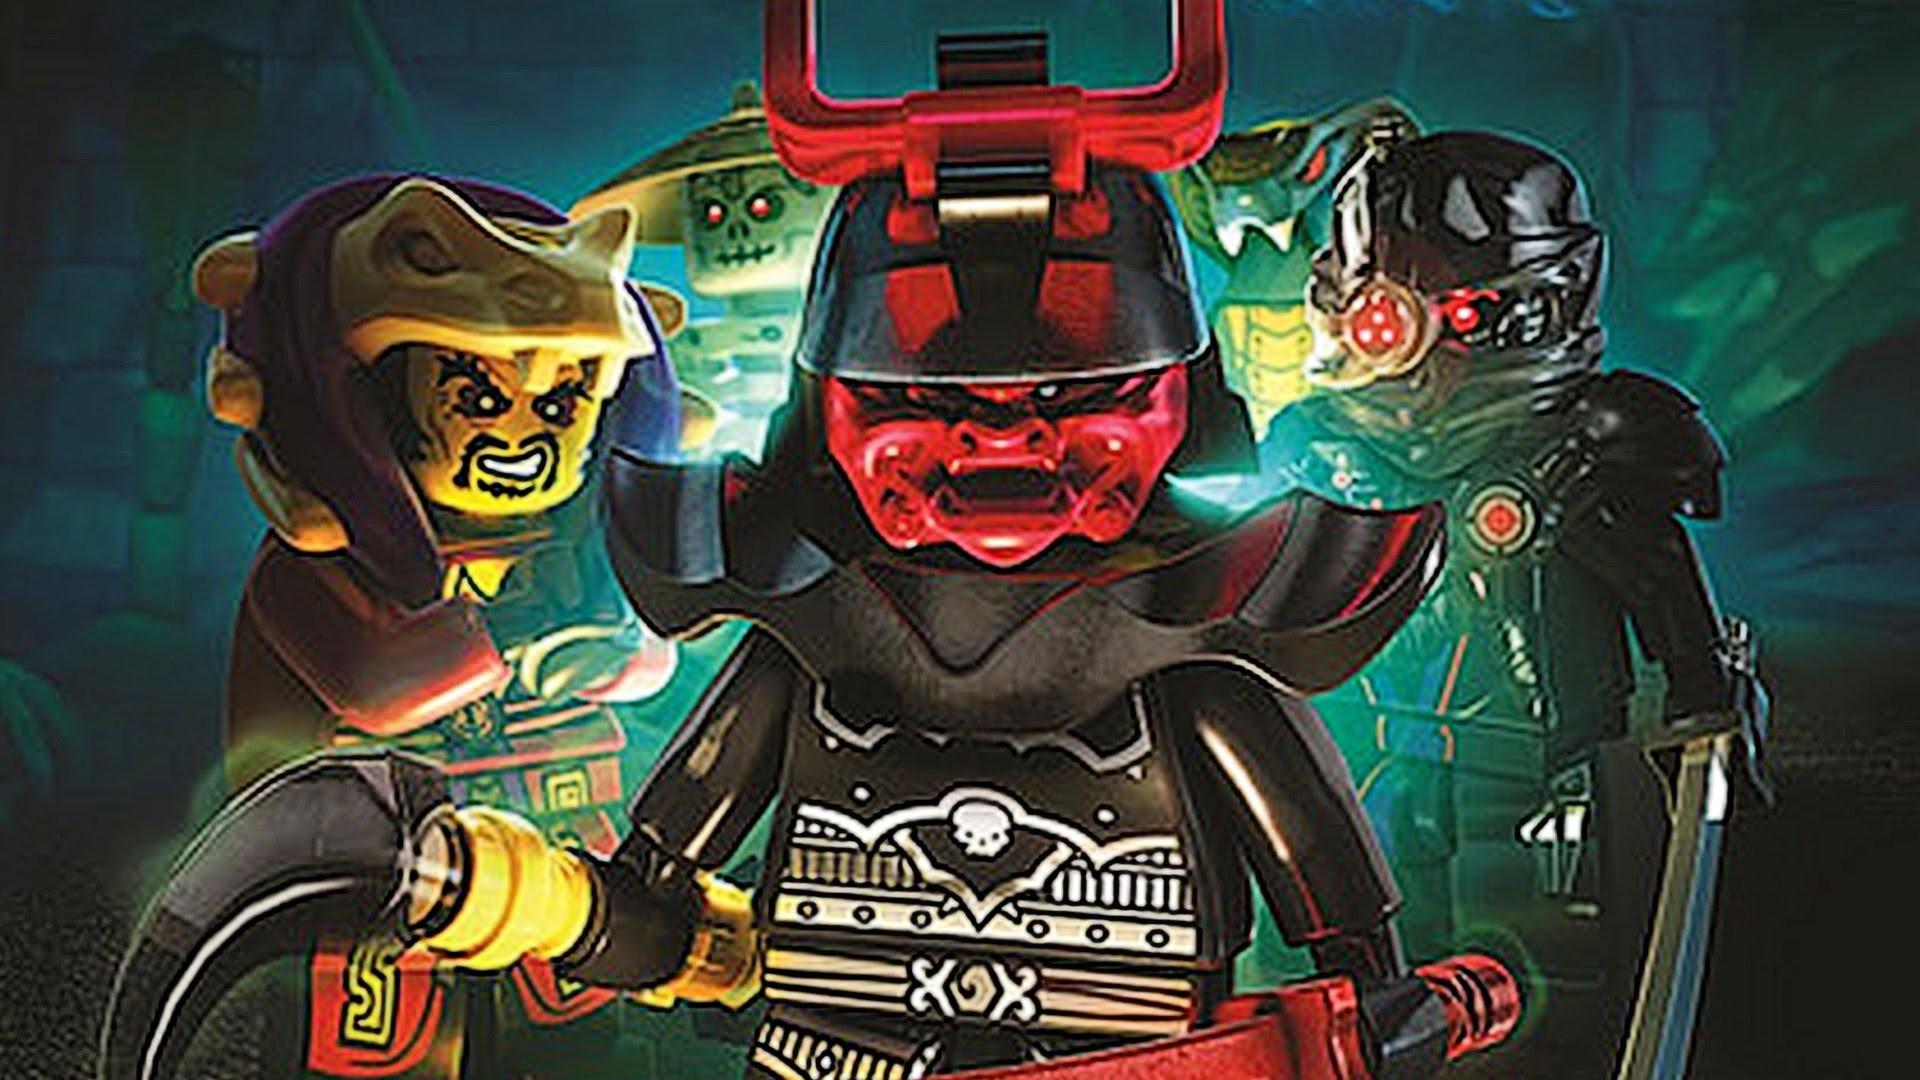 Lego Ninjago Wallpaper